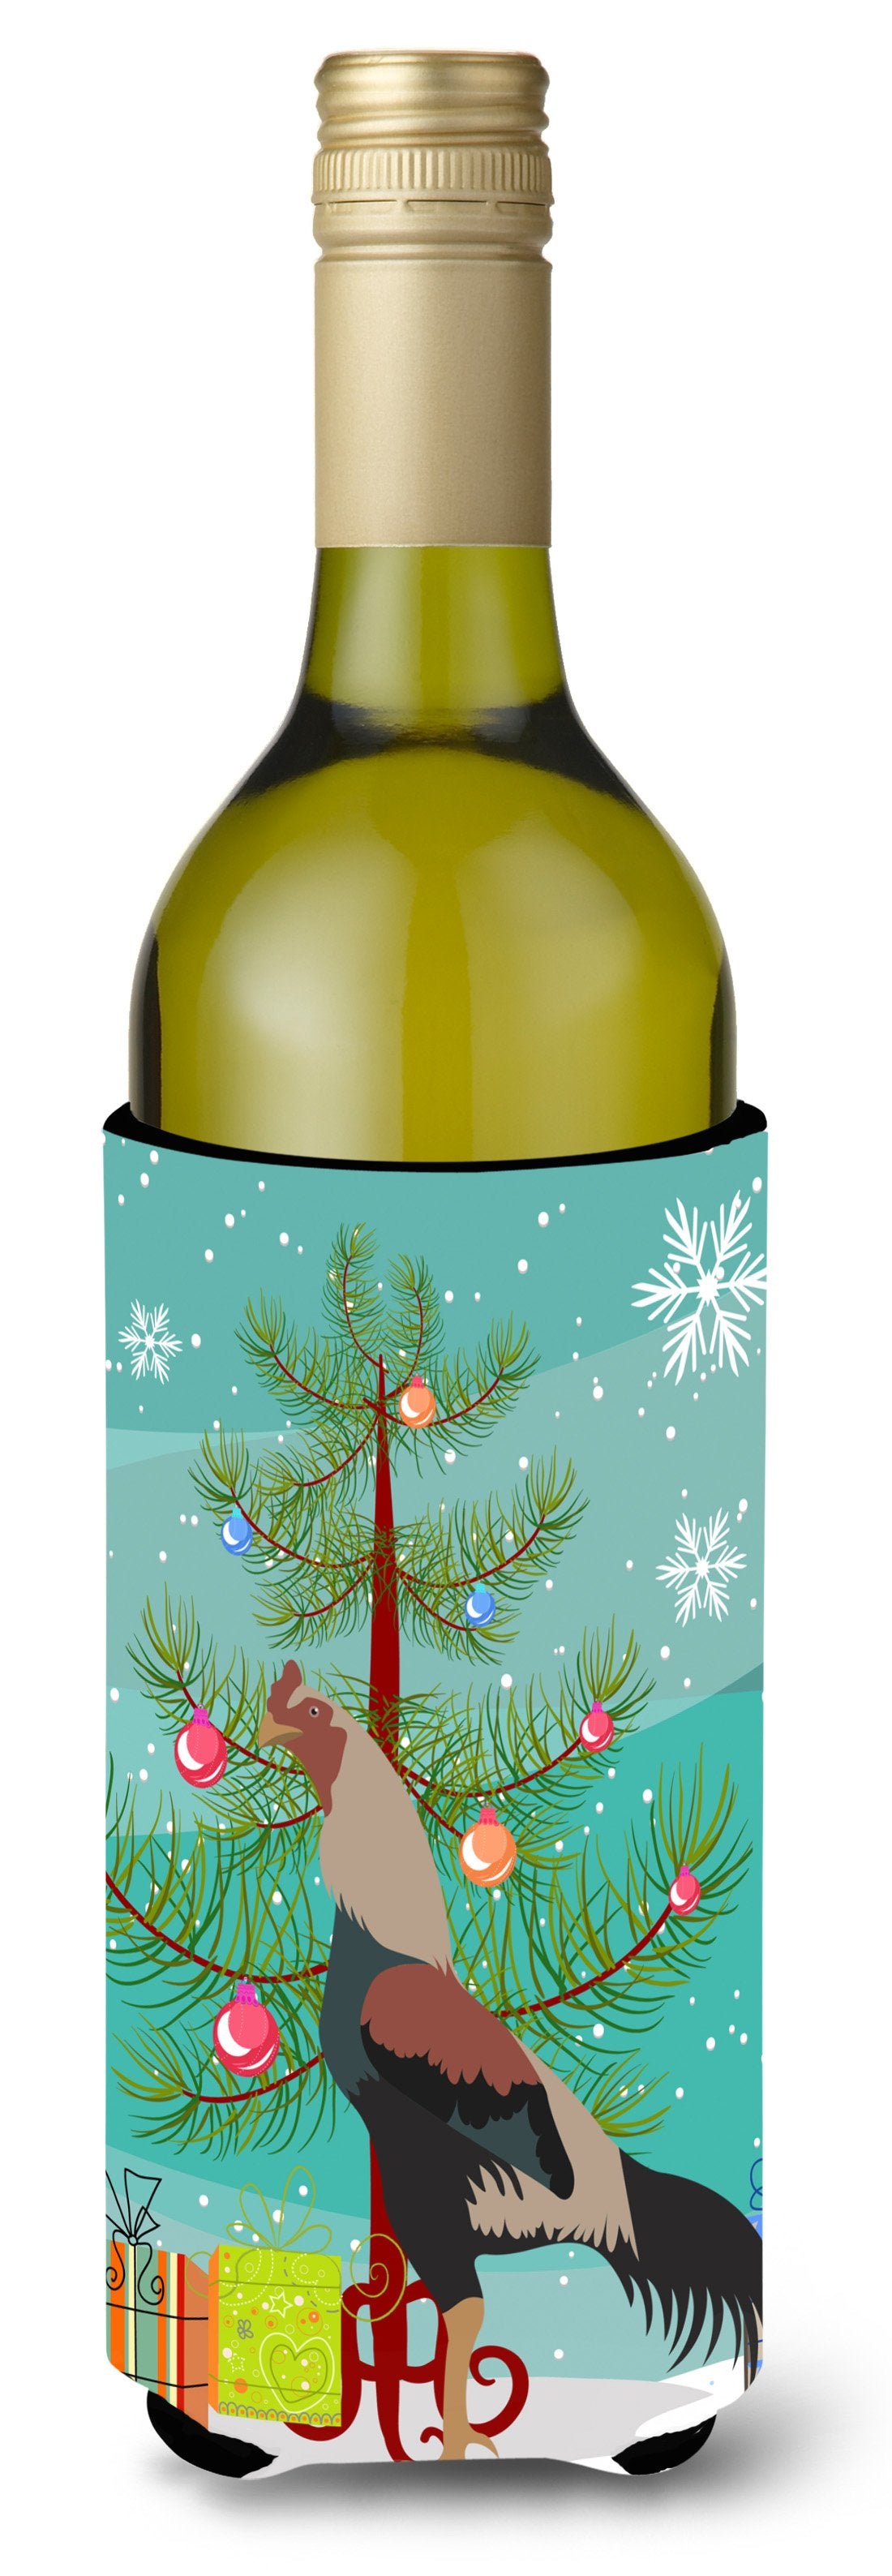 Kulang Chicken Christmas Wine Bottle Beverge Insulator Hugger BB9205LITERK by Caroline's Treasures